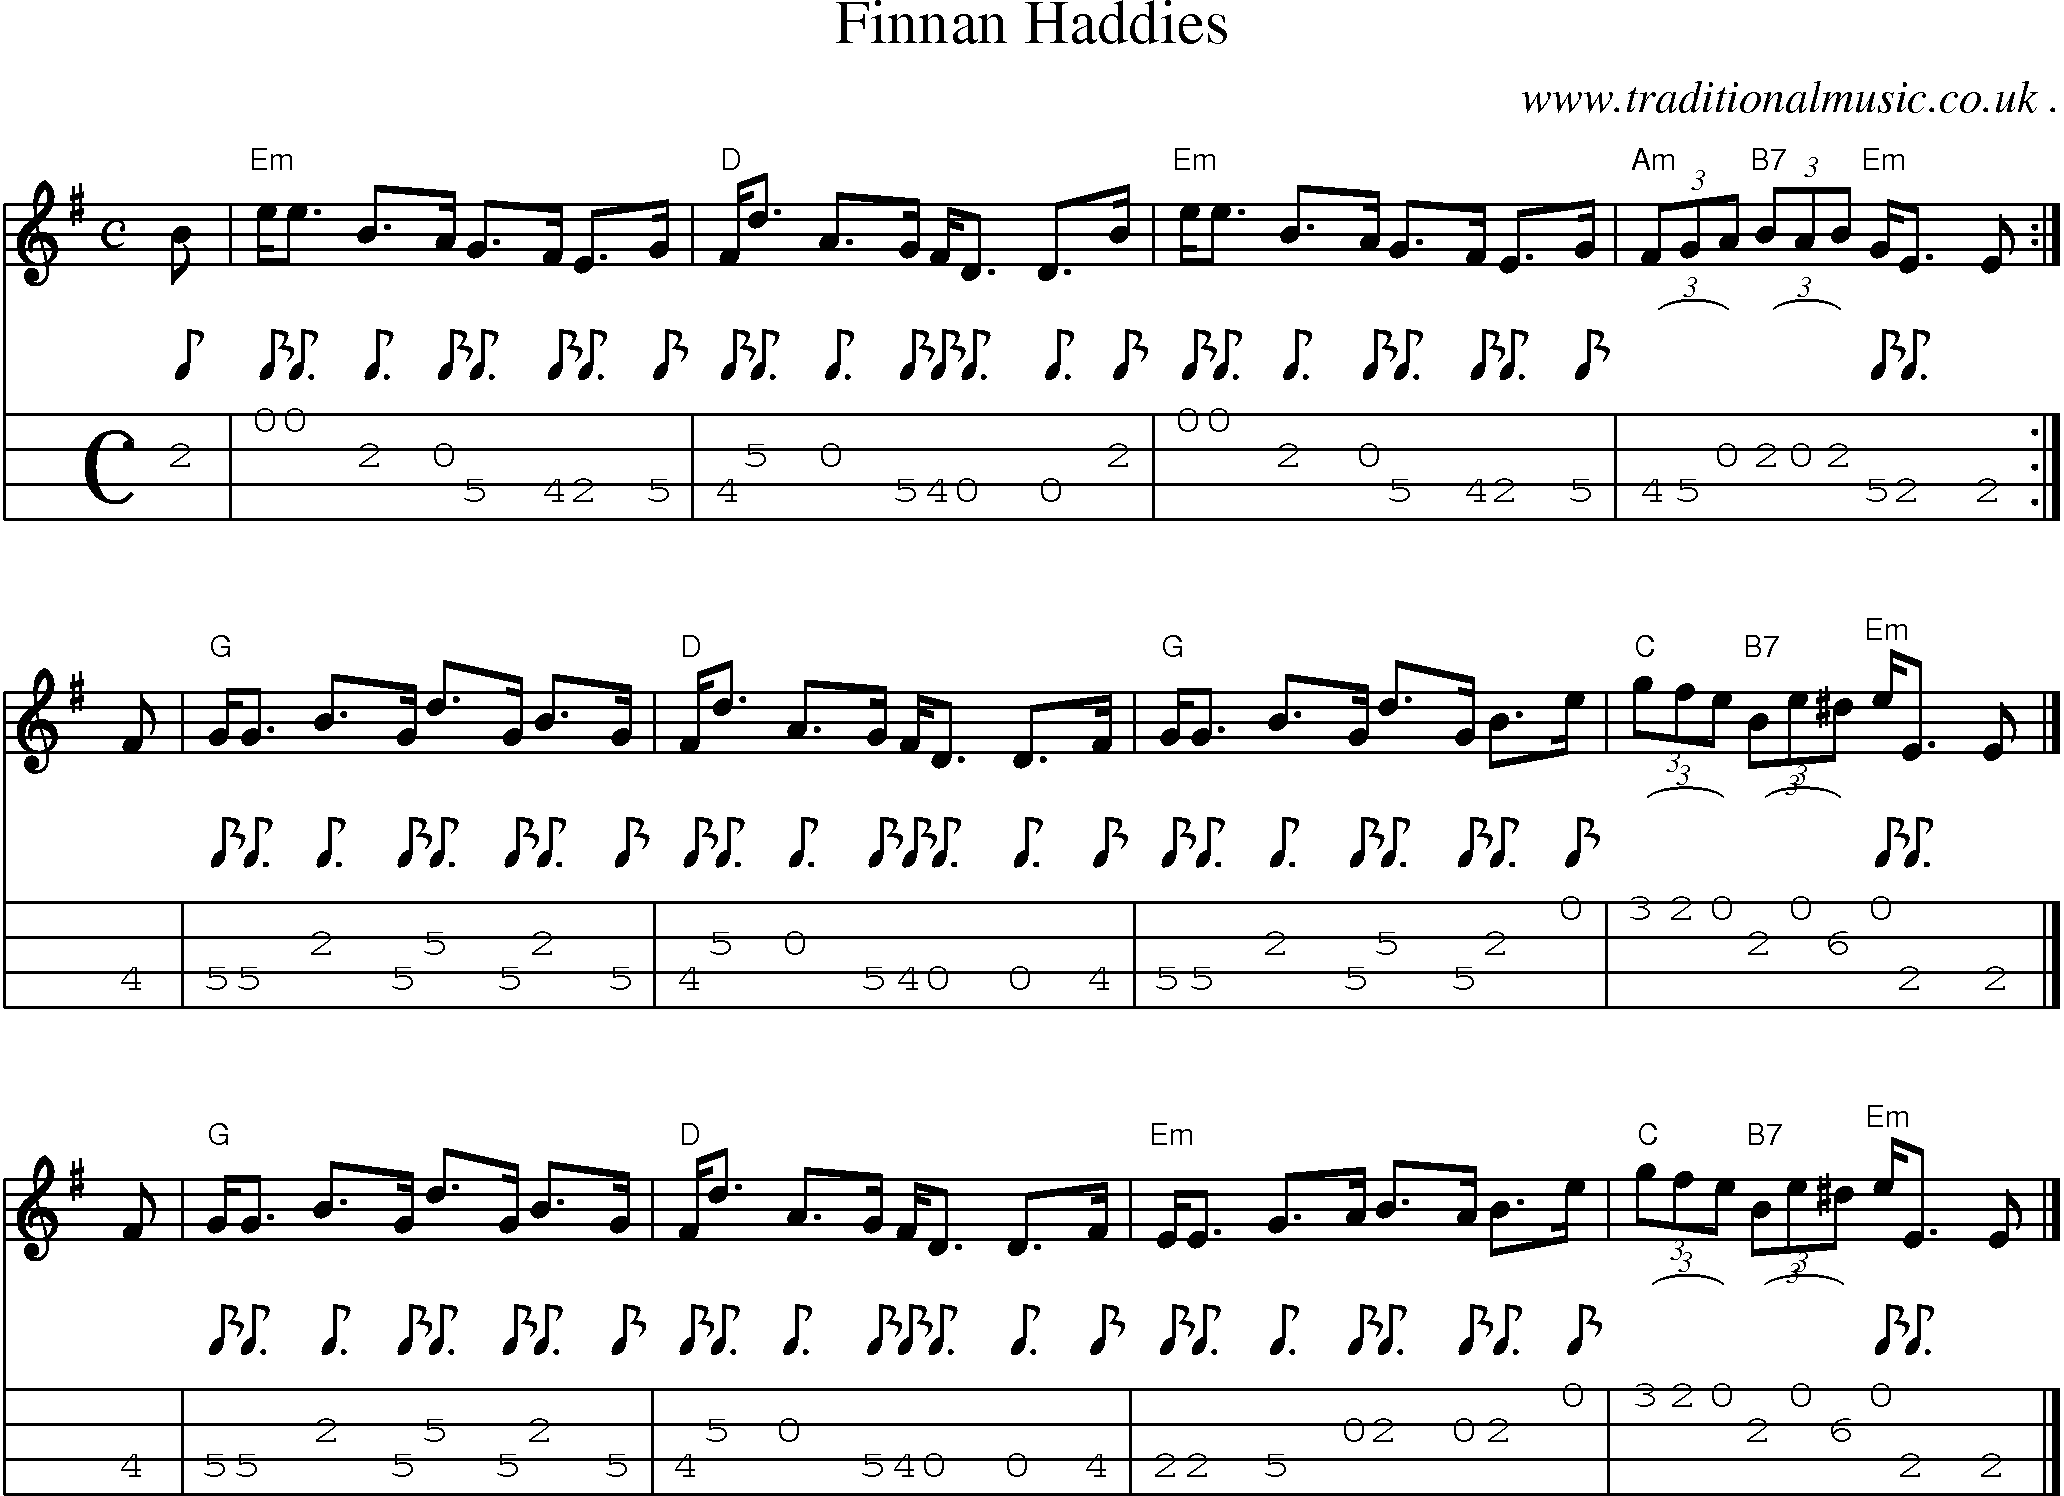 Sheet-music  score, Chords and Mandolin Tabs for Finnan Haddies